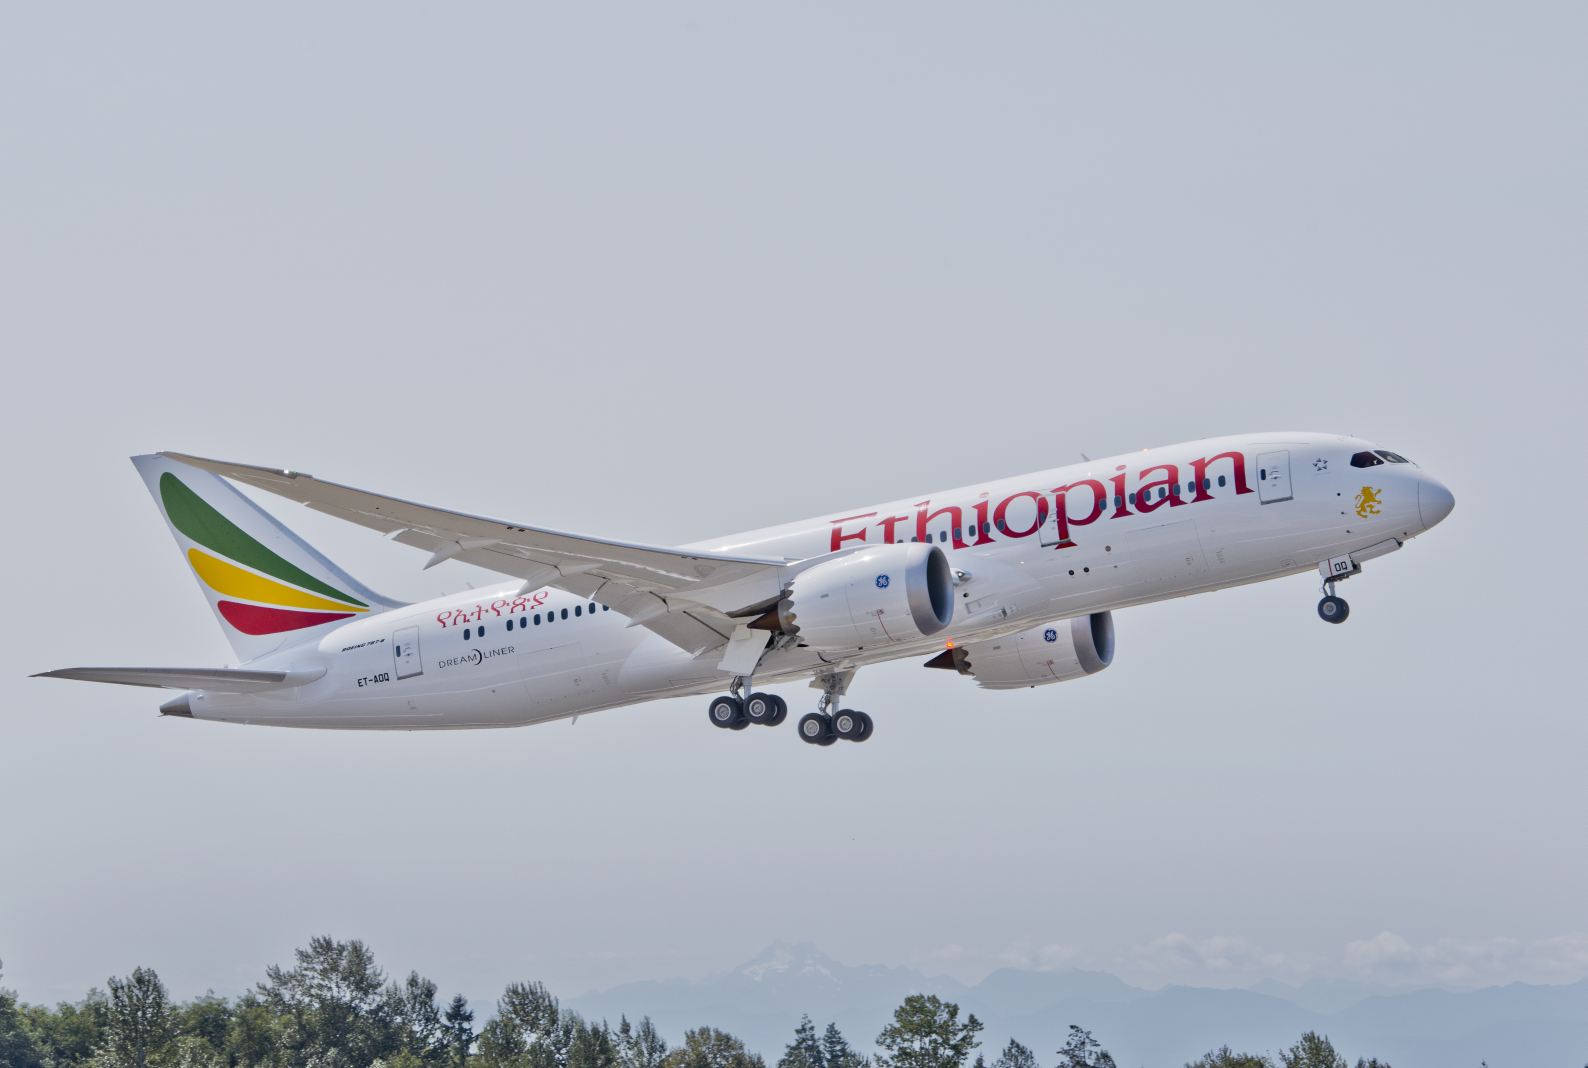 Afrika: a legalacsonyabb forgalom, a legtöbb igény a fejlődésre; az Ethiopian a kontines első 787-es felhasználójaként mutat példát